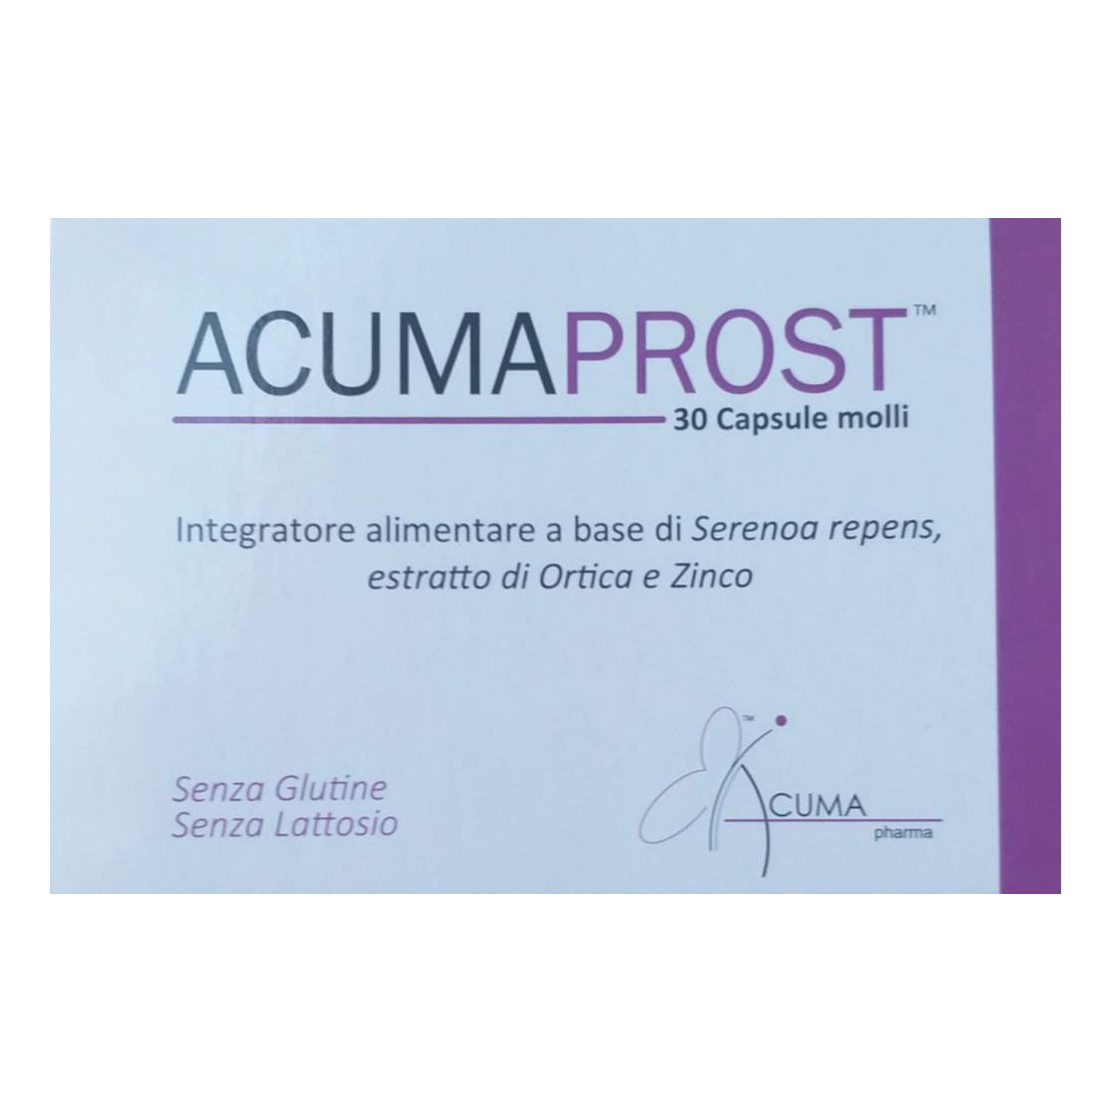 Image of Acumaprost Acuma Pharma 30 Capsule